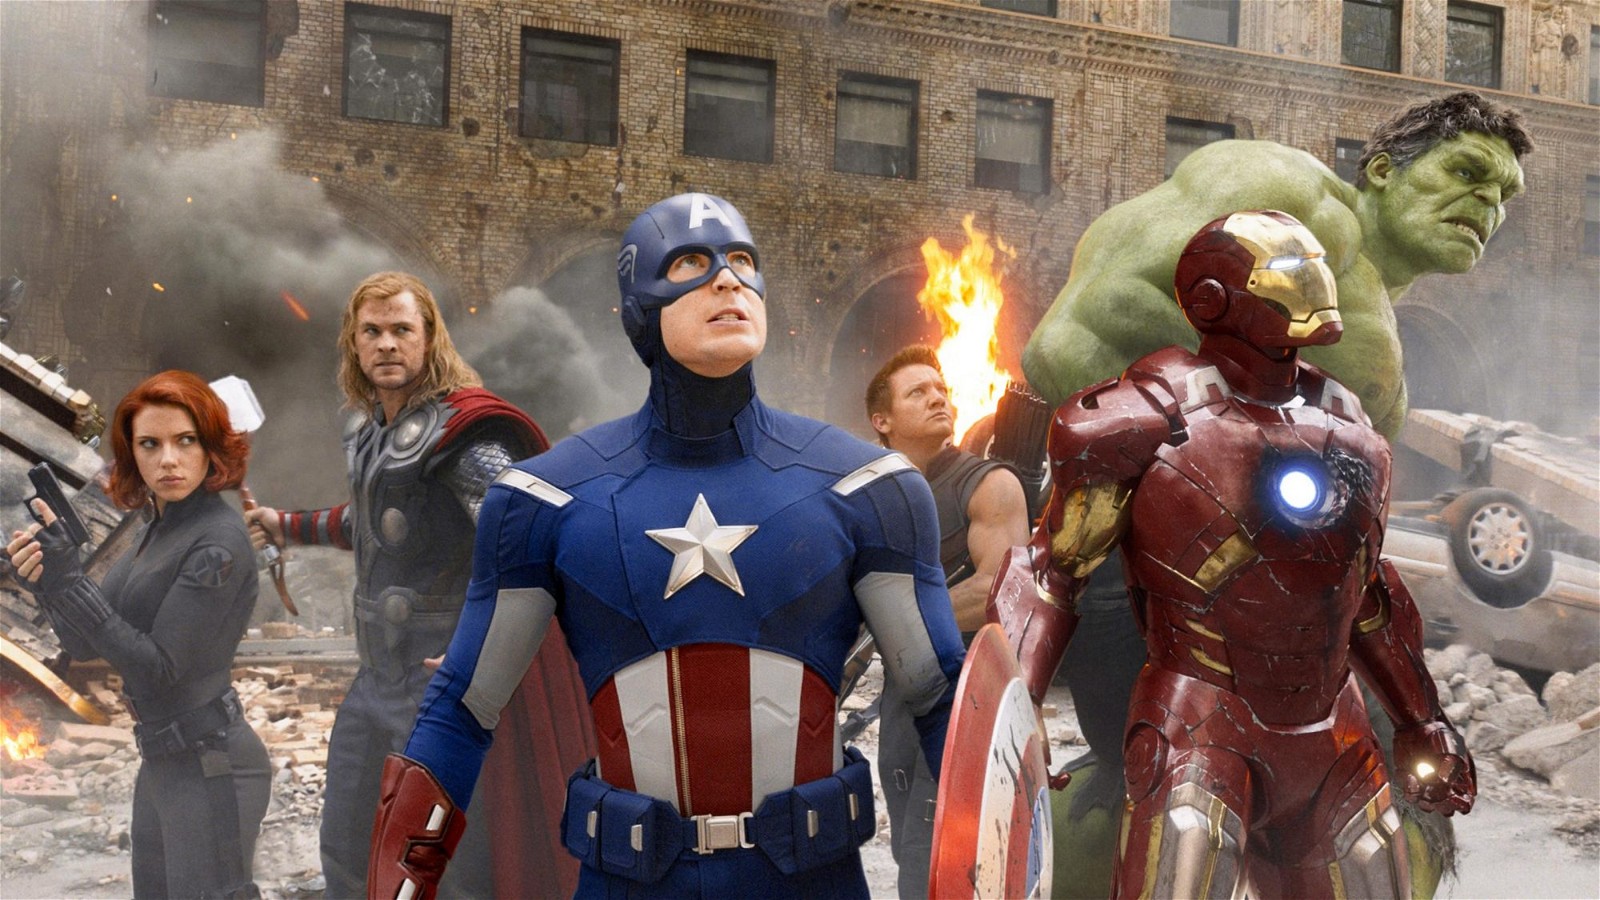 The original 6 Avengers